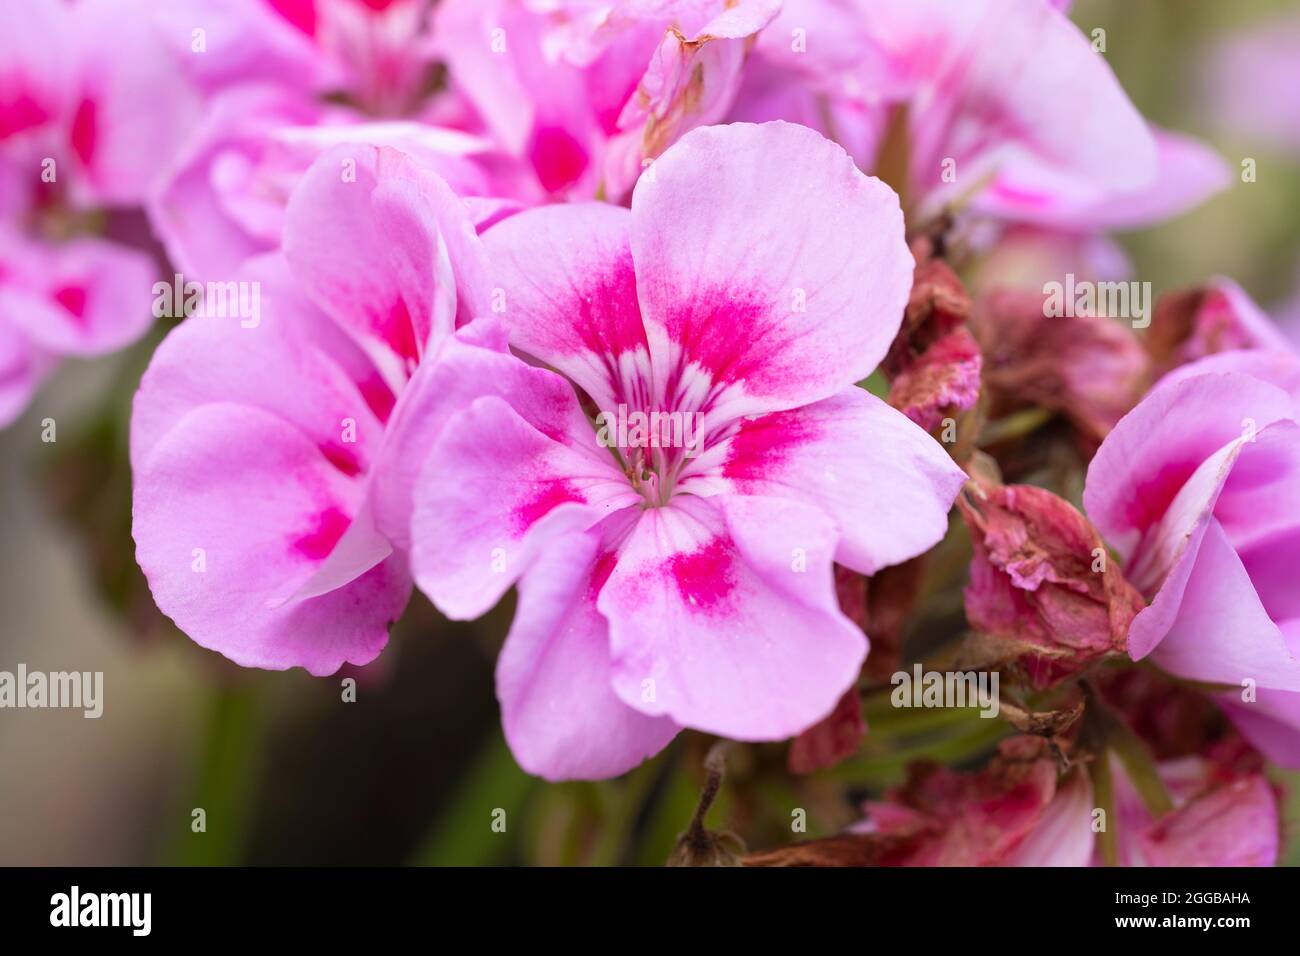 Gros plan sur Geranium Pelargonium zonale - Tango Bravo série rose clair - avec des fleurs de pétales rose pâle. Floraison en août, Angleterre Banque D'Images